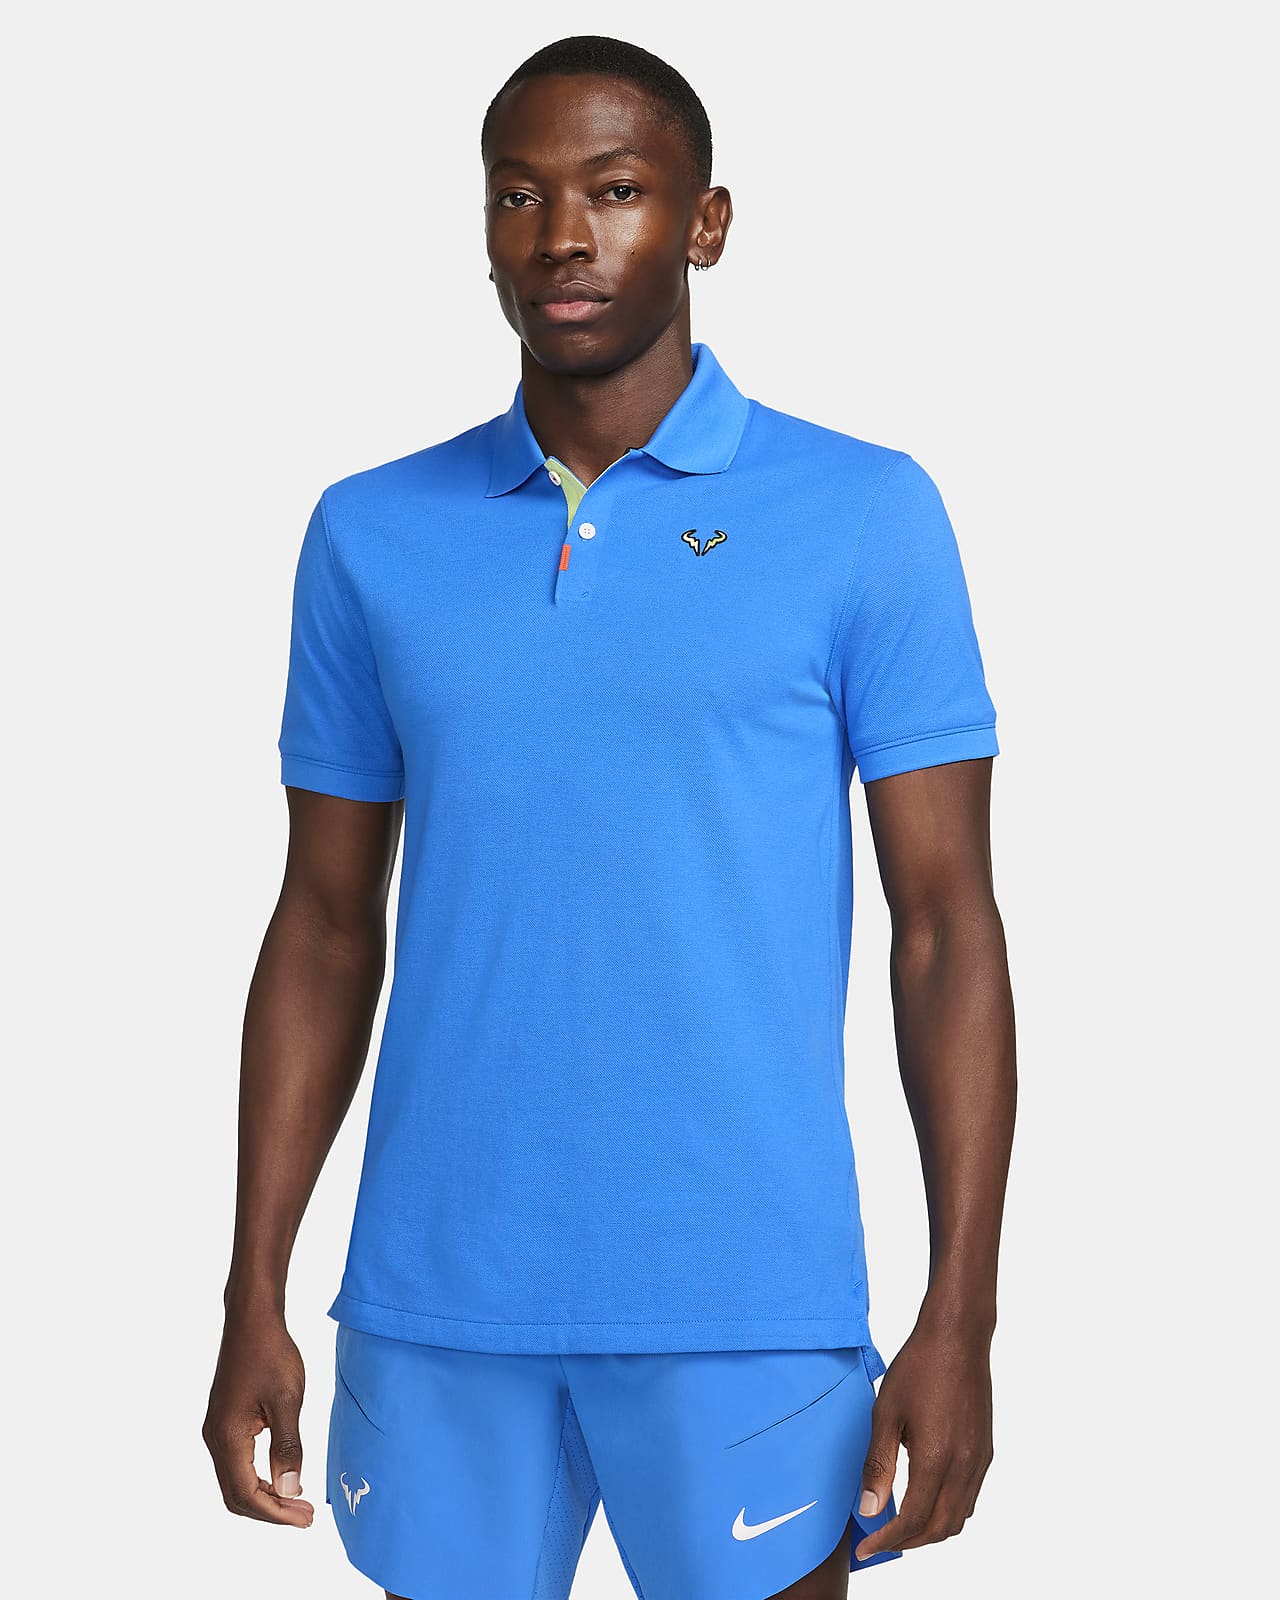 Ανδρική μπλούζα πόλο με στενή εφαρμογή The Nike Polo Rafa